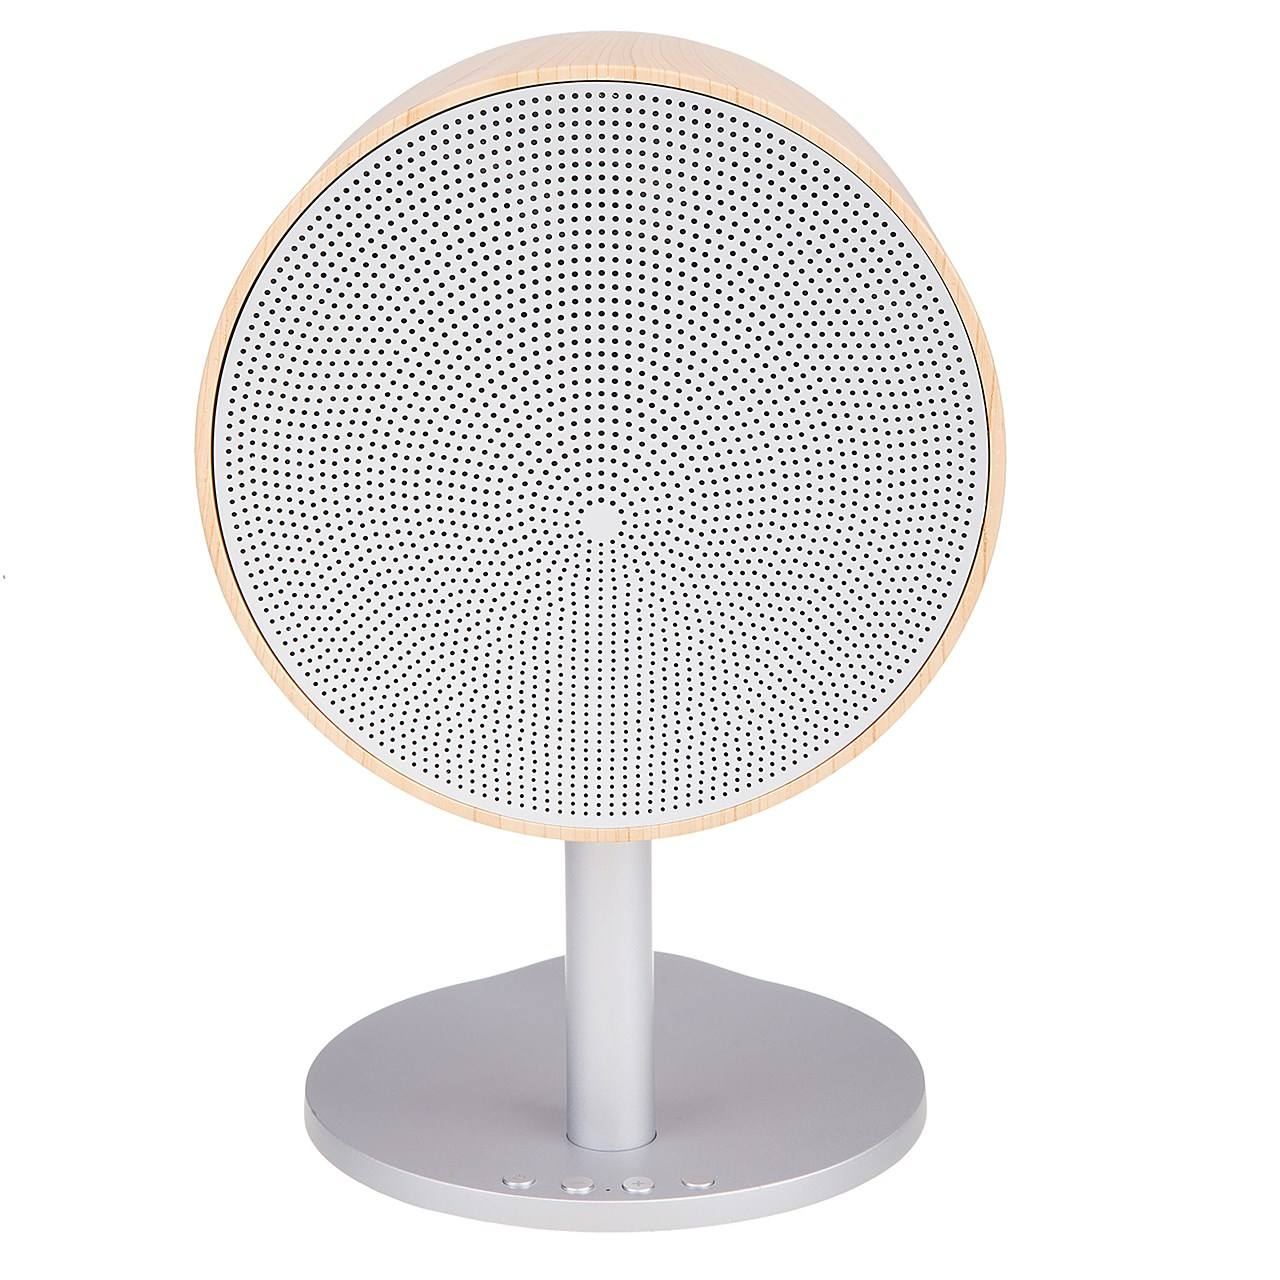 اسپيكر - Speaker برند نامشخص-- اسپیکر بلوتوثی آکولاد ساند-Accolade Sound مدل Drum AS360